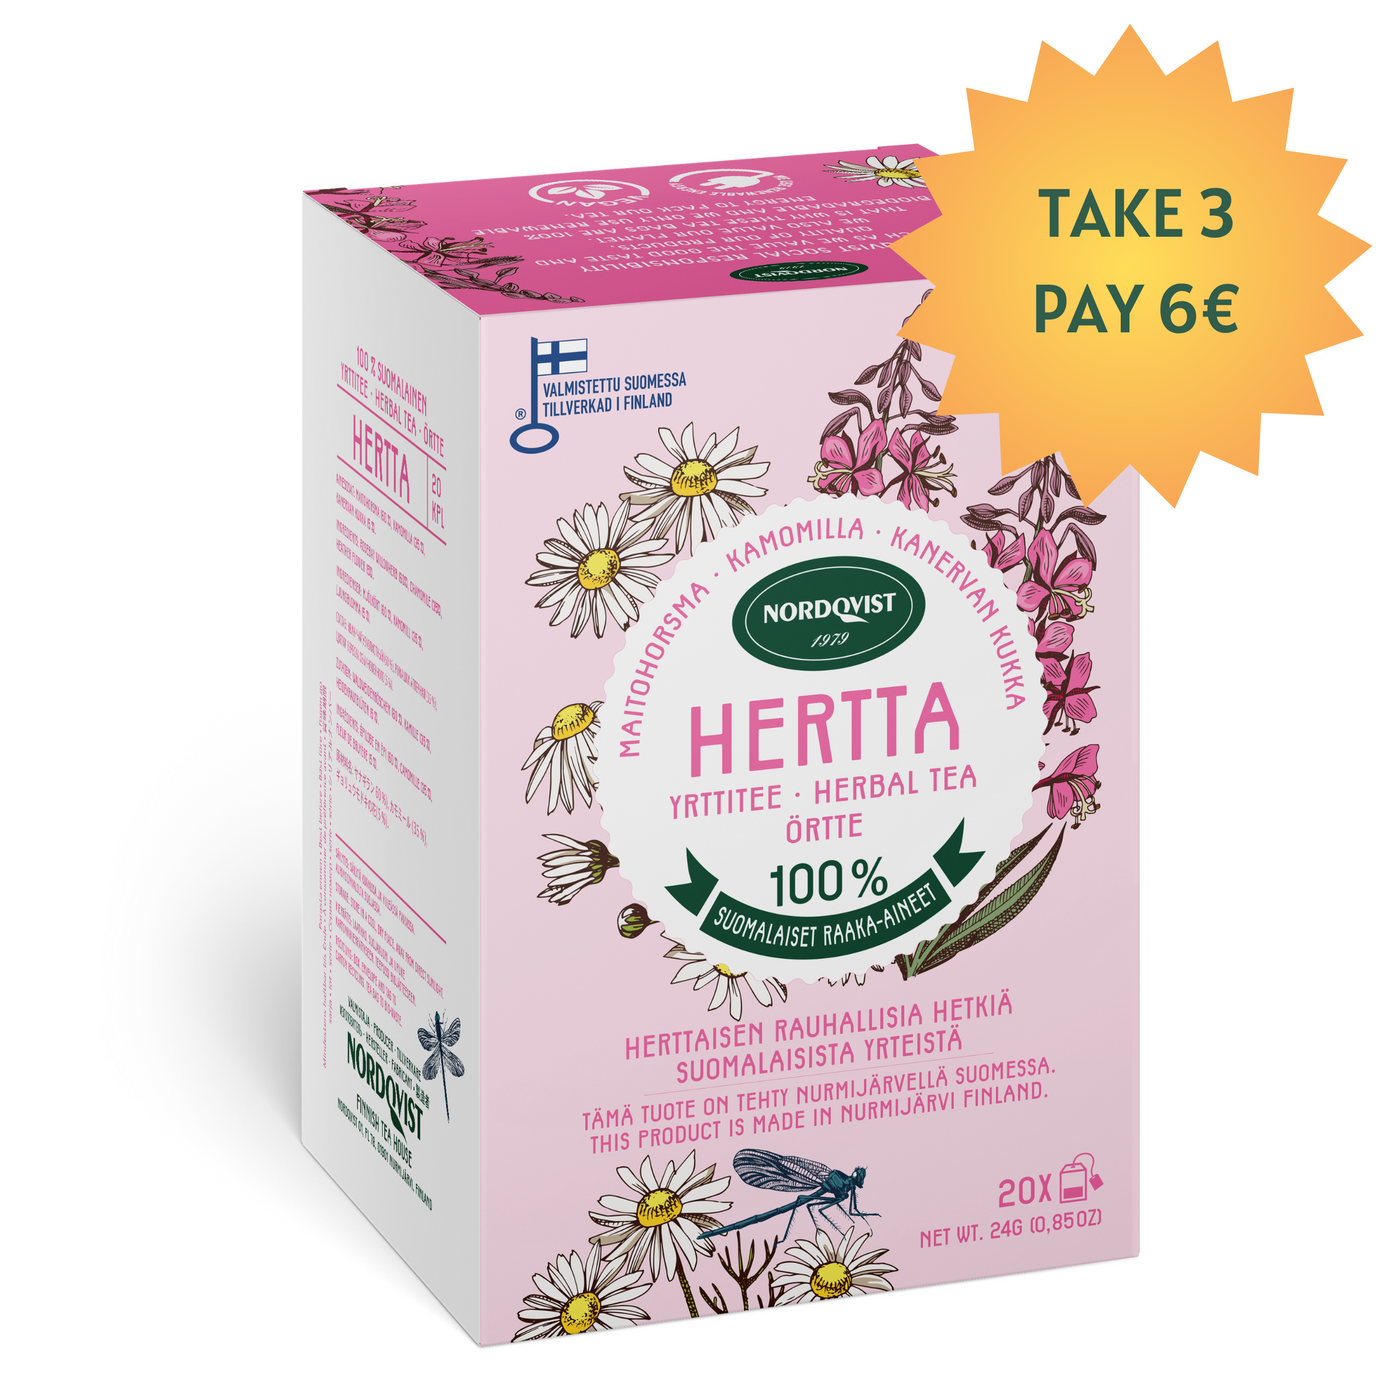 HERTTA pure herbal tea grown in Finland